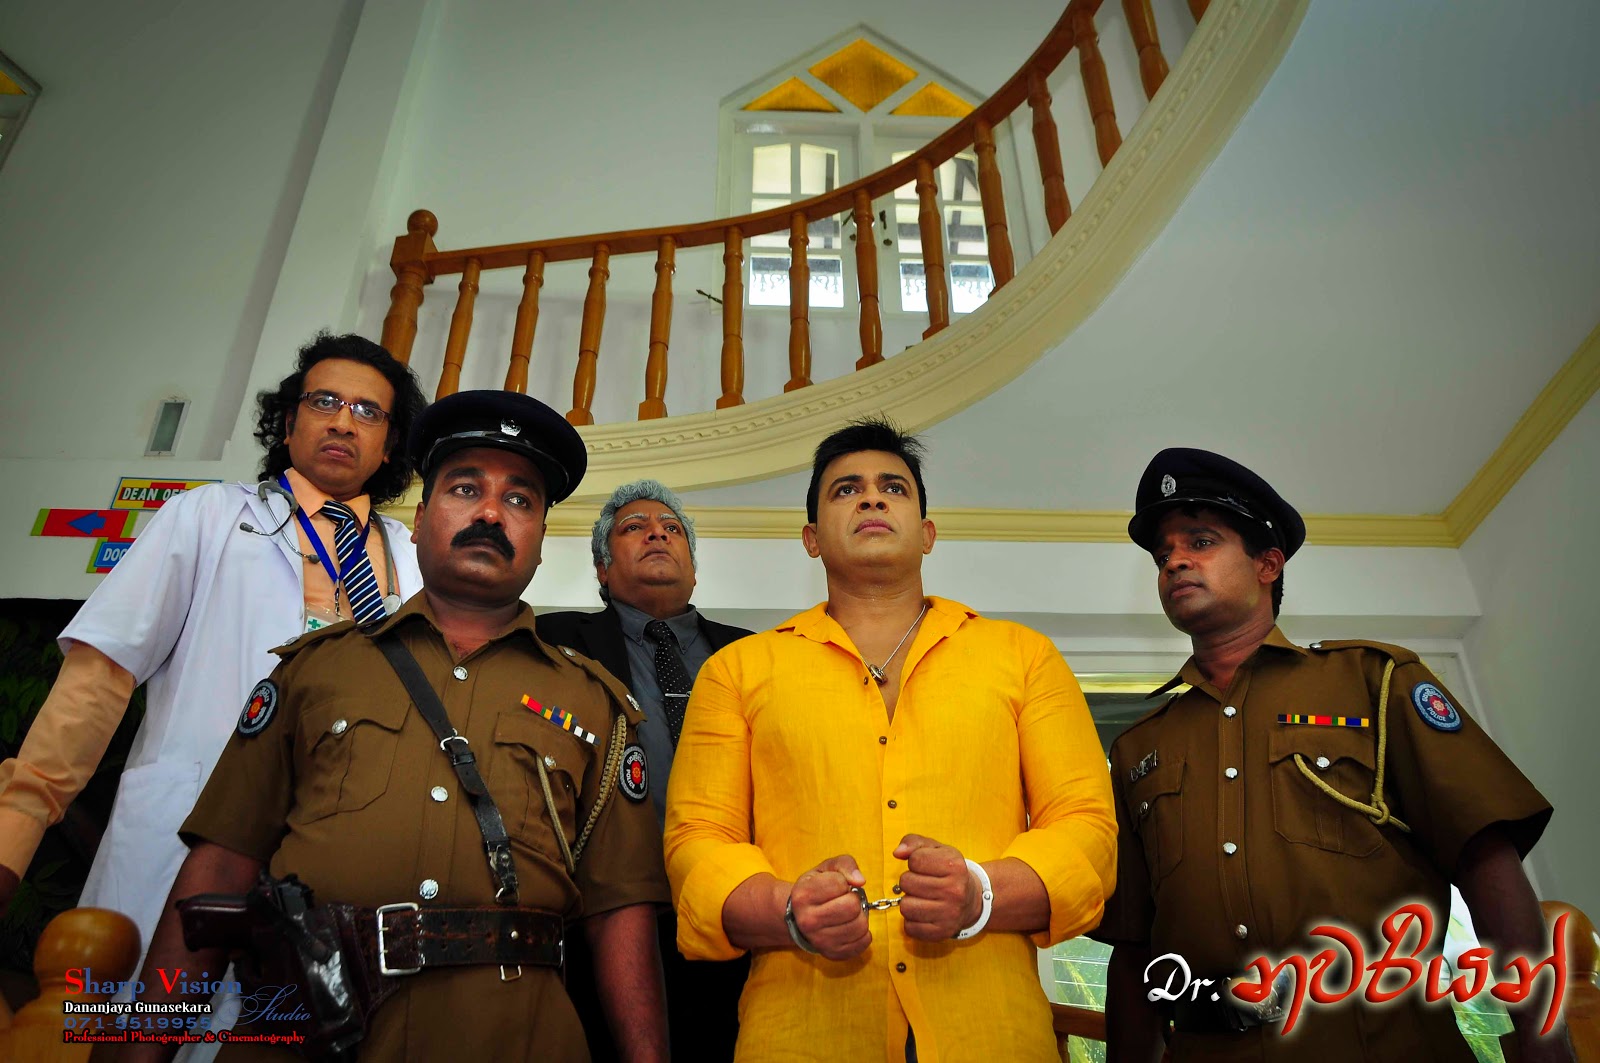 Dheewarayo Sinhala Full Movie Download